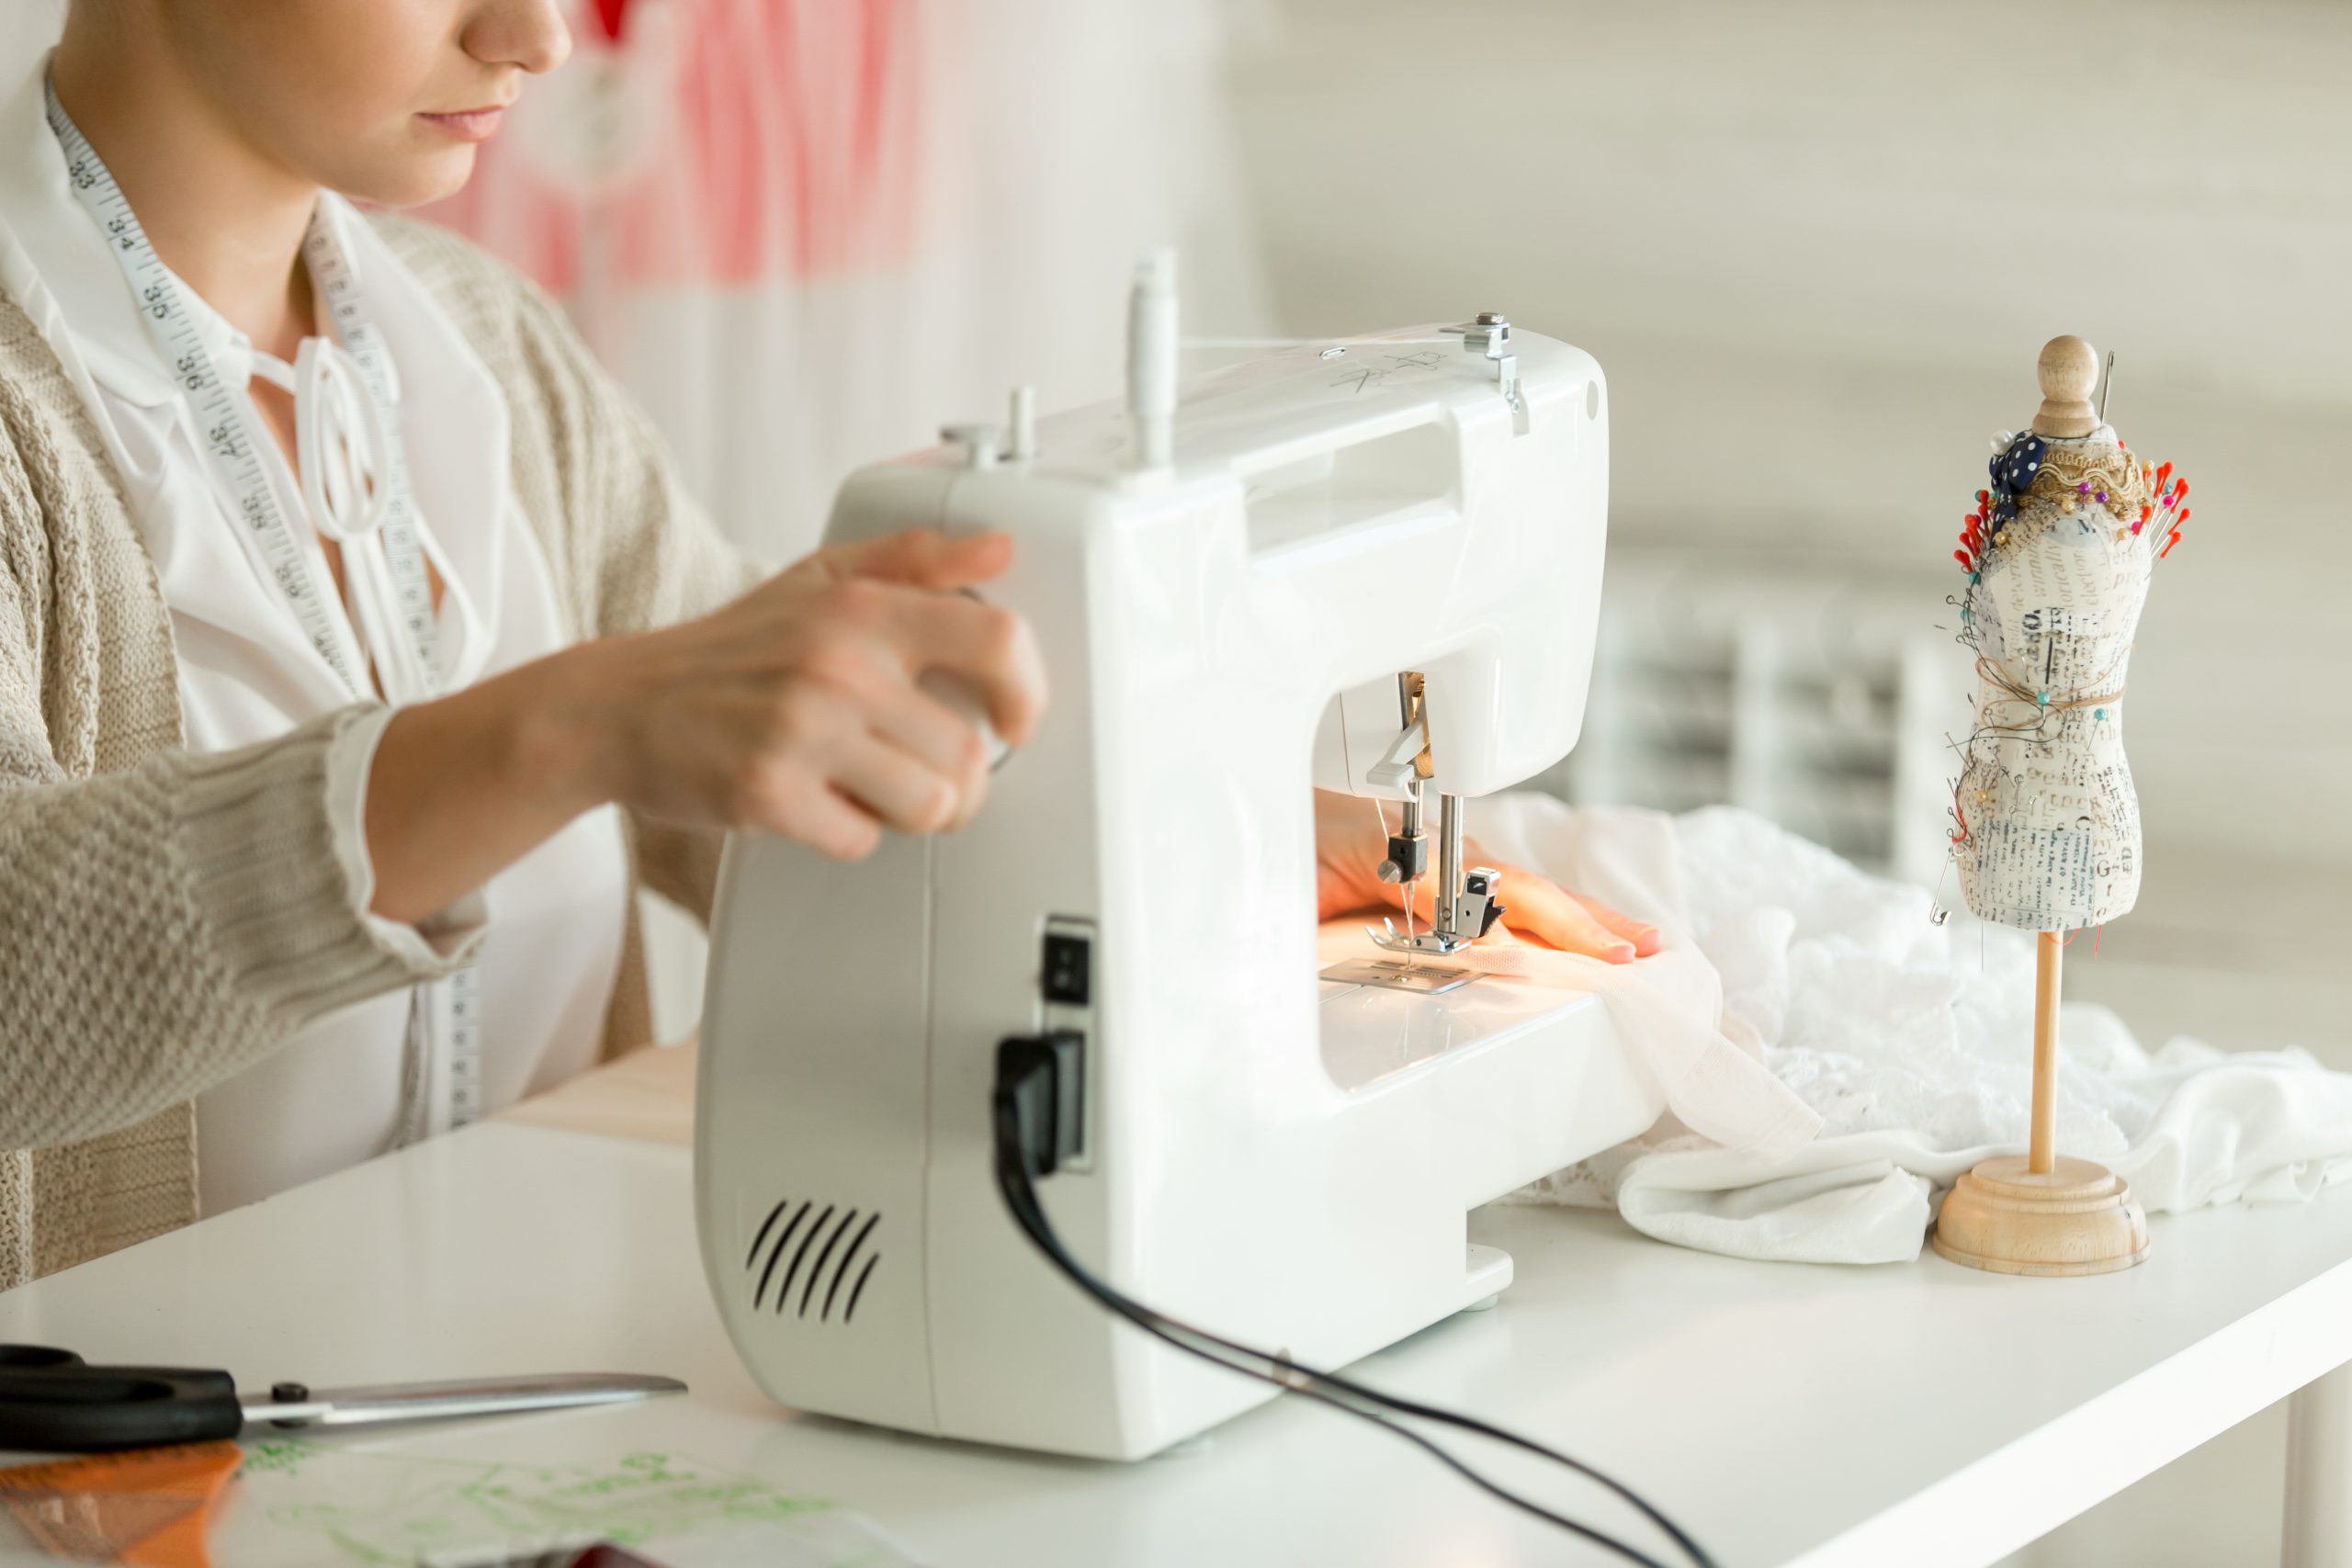 Якутянка потеряла деньги, пытаясь продать швейную машину в интернете